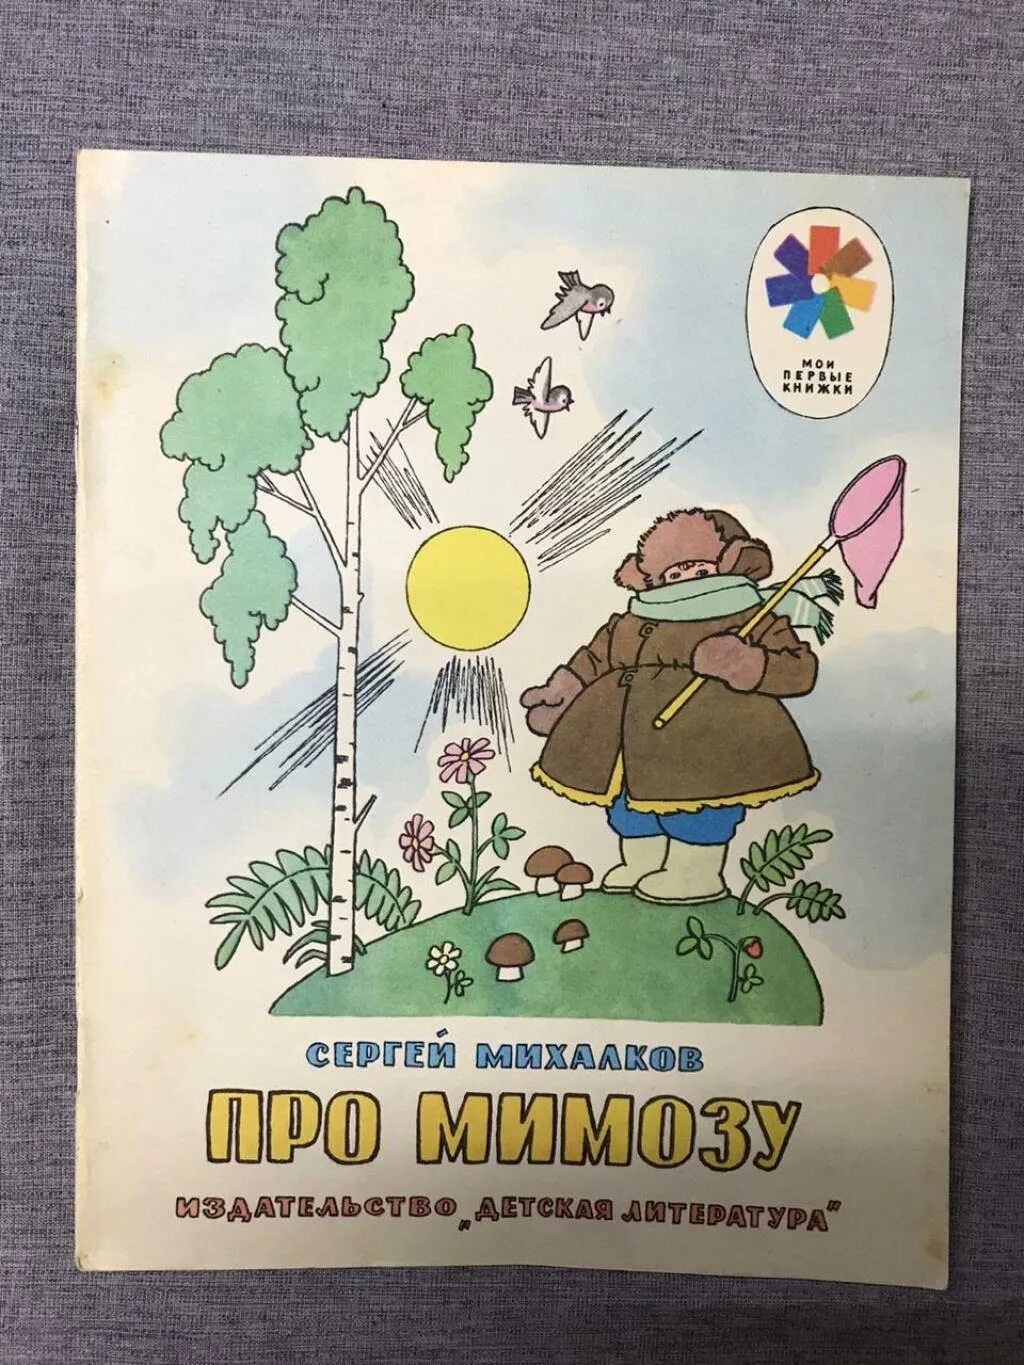 Михалков с.в. "про мимозу". Детская книга про мимозу. Обложка книги про мимозу. Книги Михалкова про мимозу.